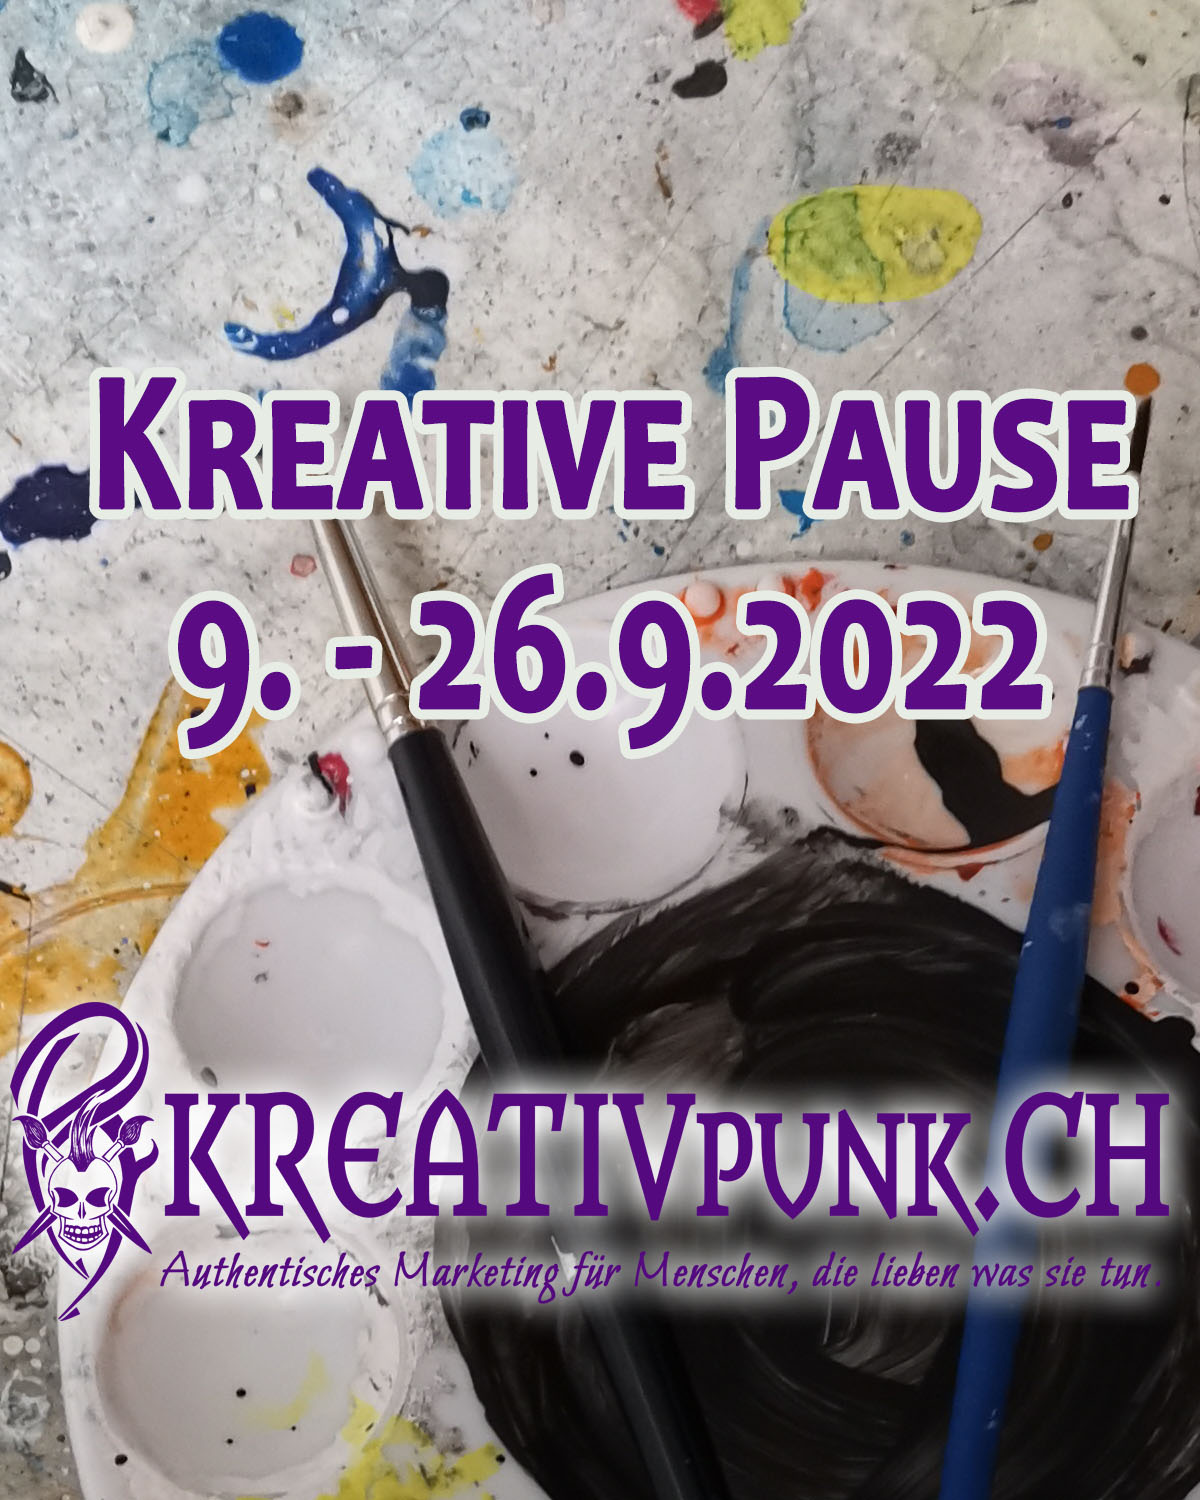 Sommerferien vom 9. - 26.9.2022 Kreativpunk.ch, Lauerz